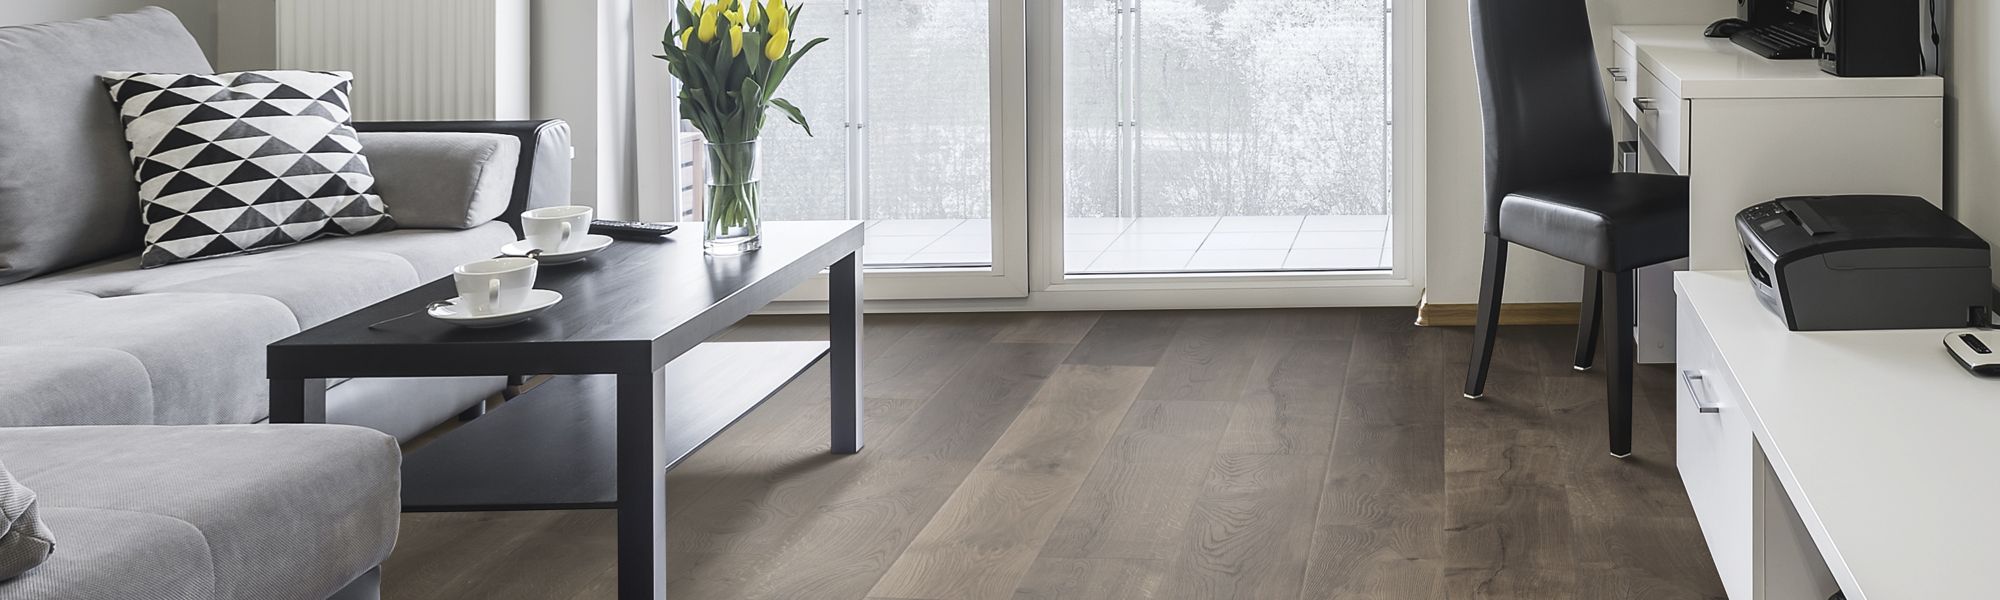 Light gray laminate floors in modern living room